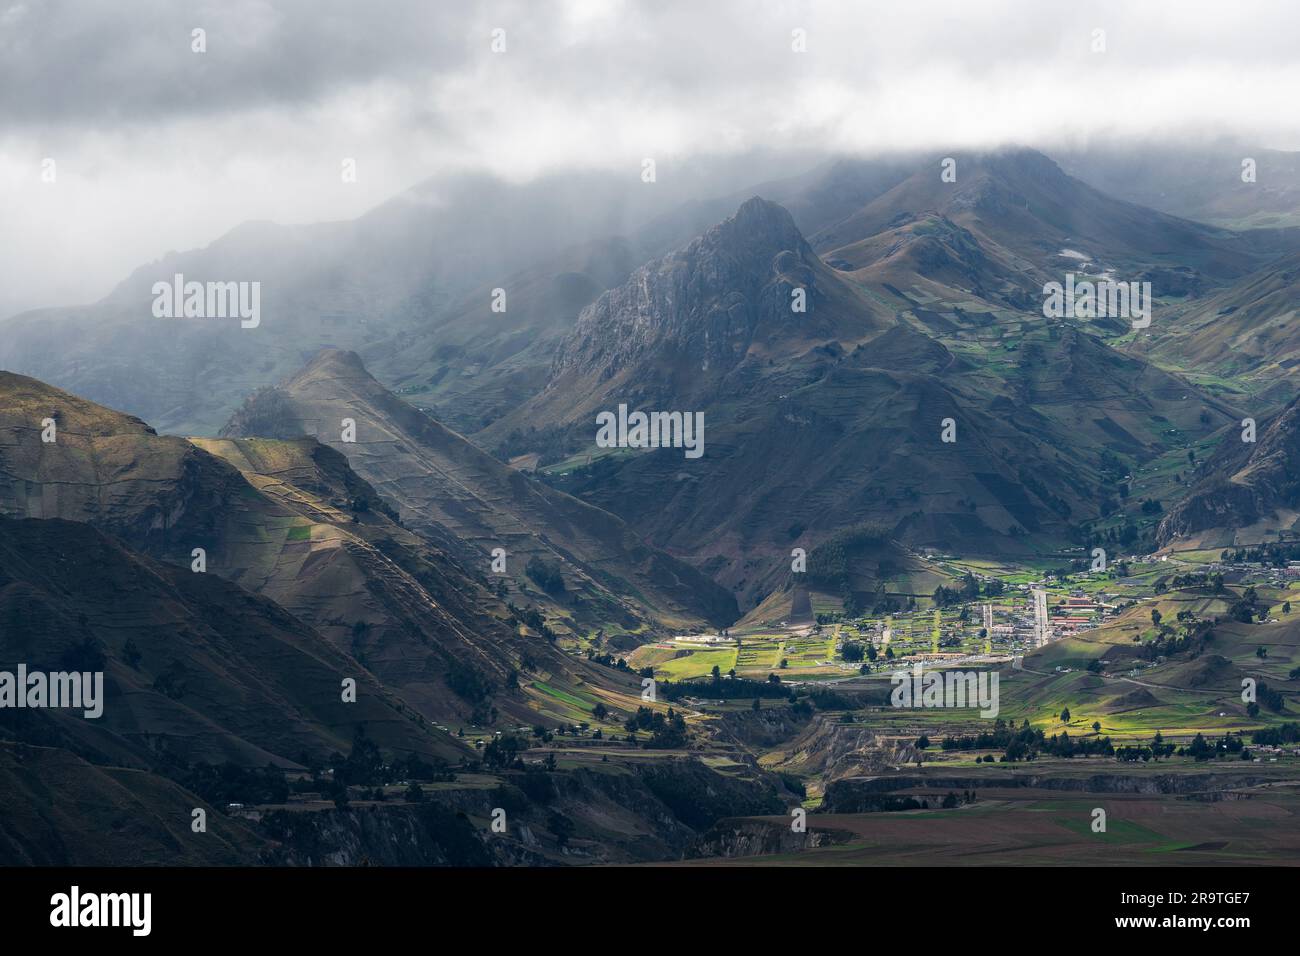 Andes agriculture village near Quilotoa lagoon, Quito, Ecuador. Stock Photo